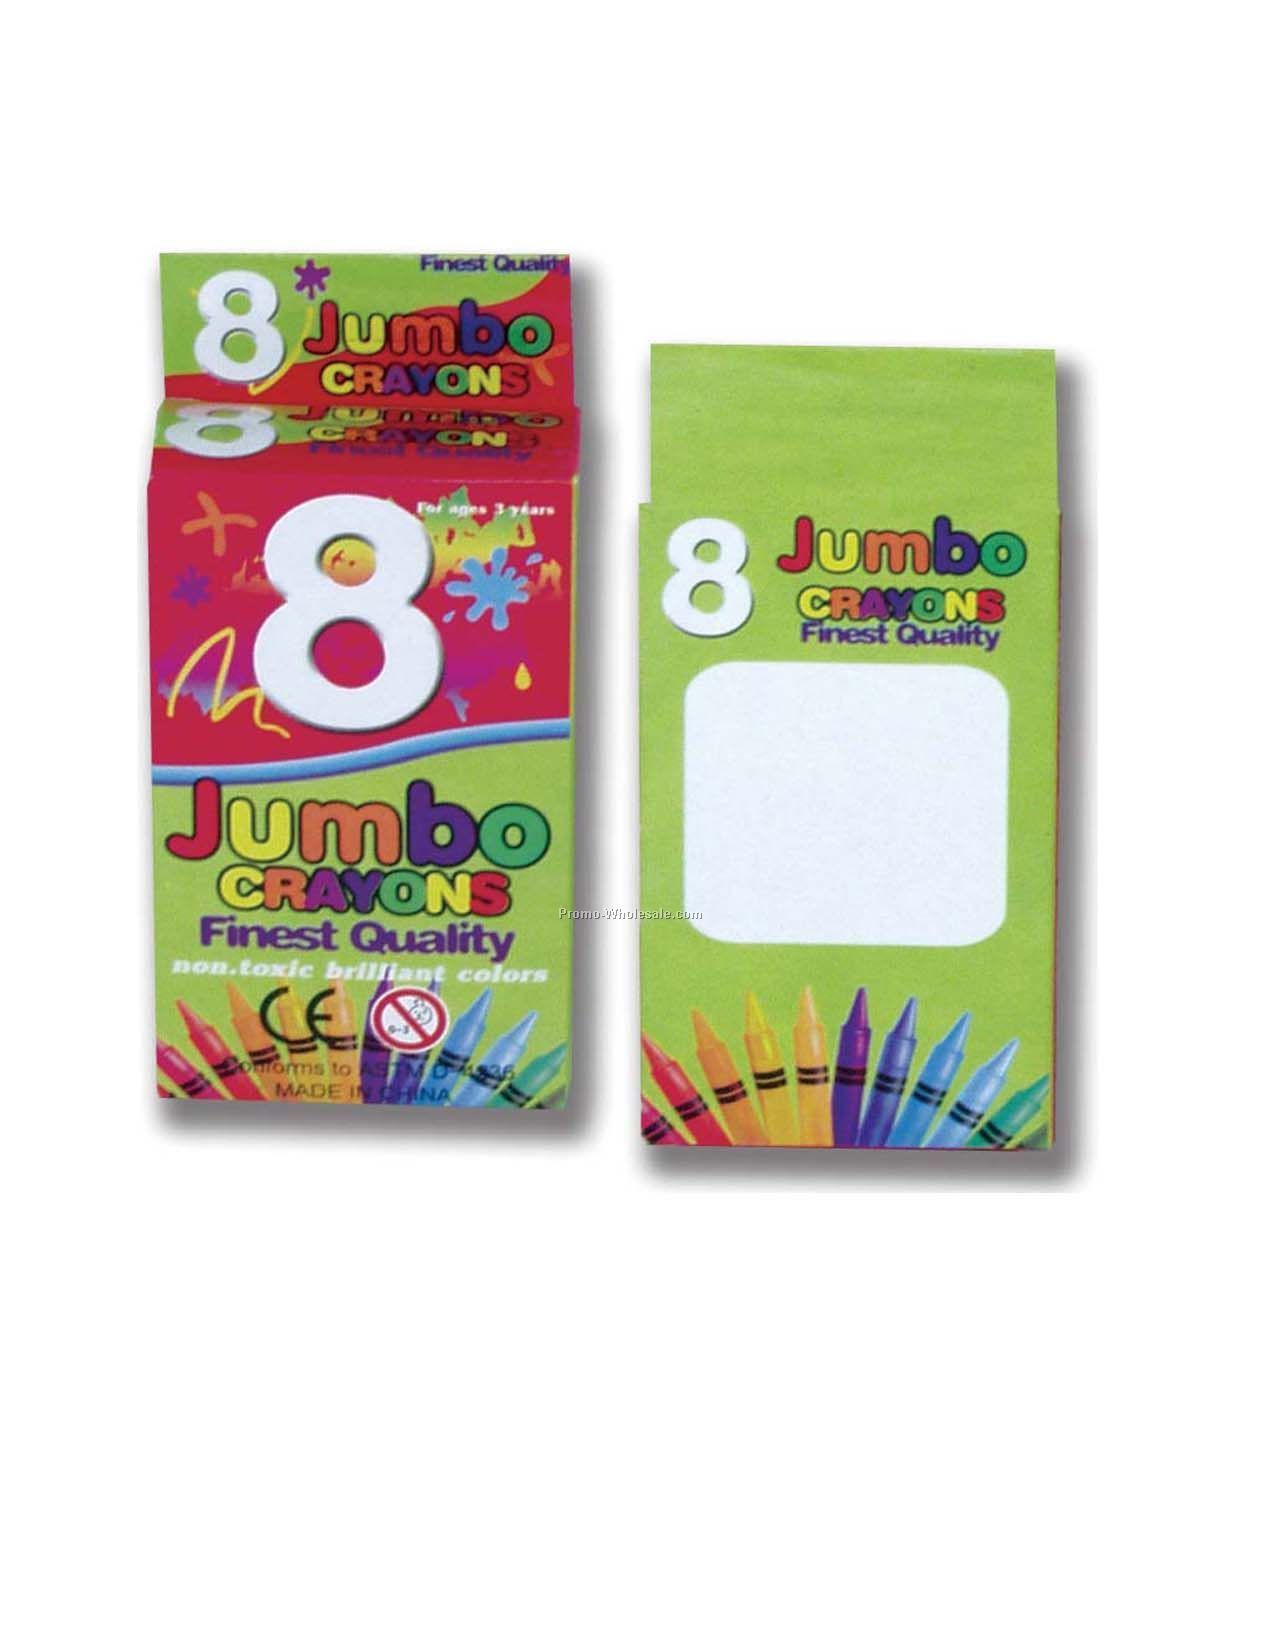 8 Jumbo Crayon Pack